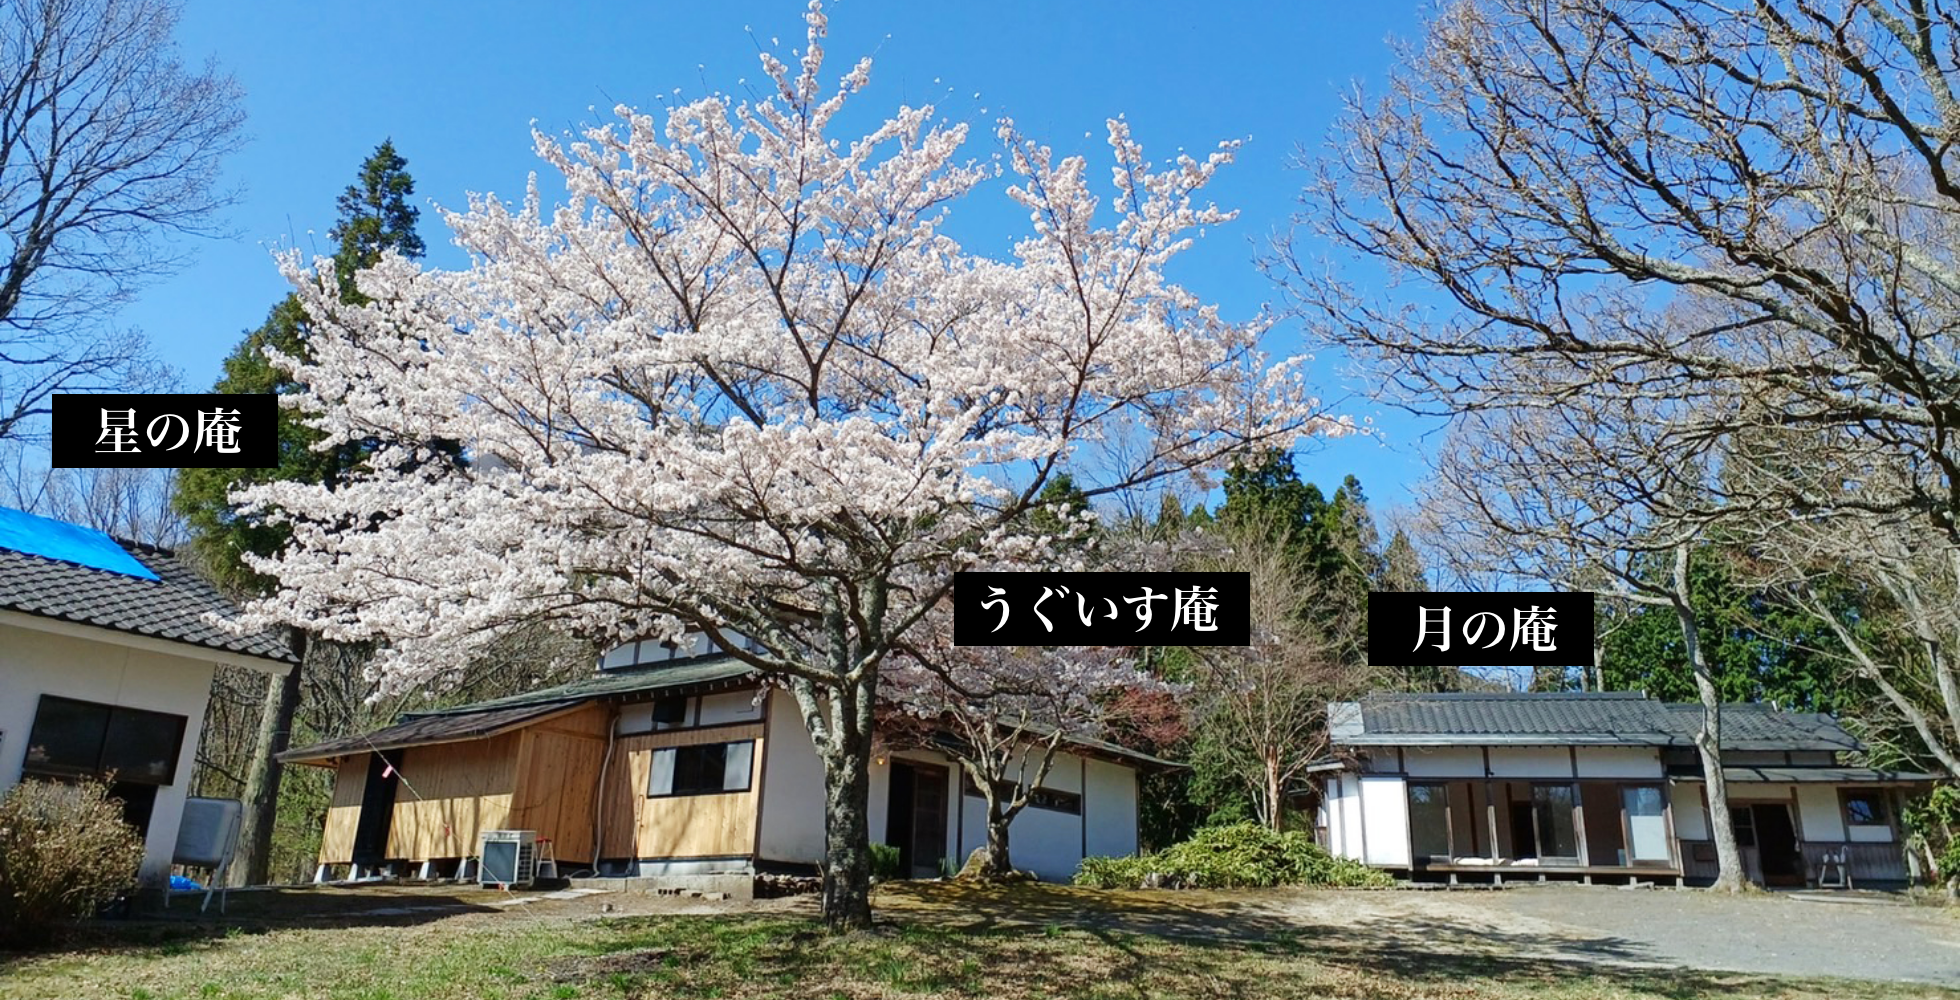 住   山口怜子公式サイト 家族を綴る日本キルト・地熱たべもの研究